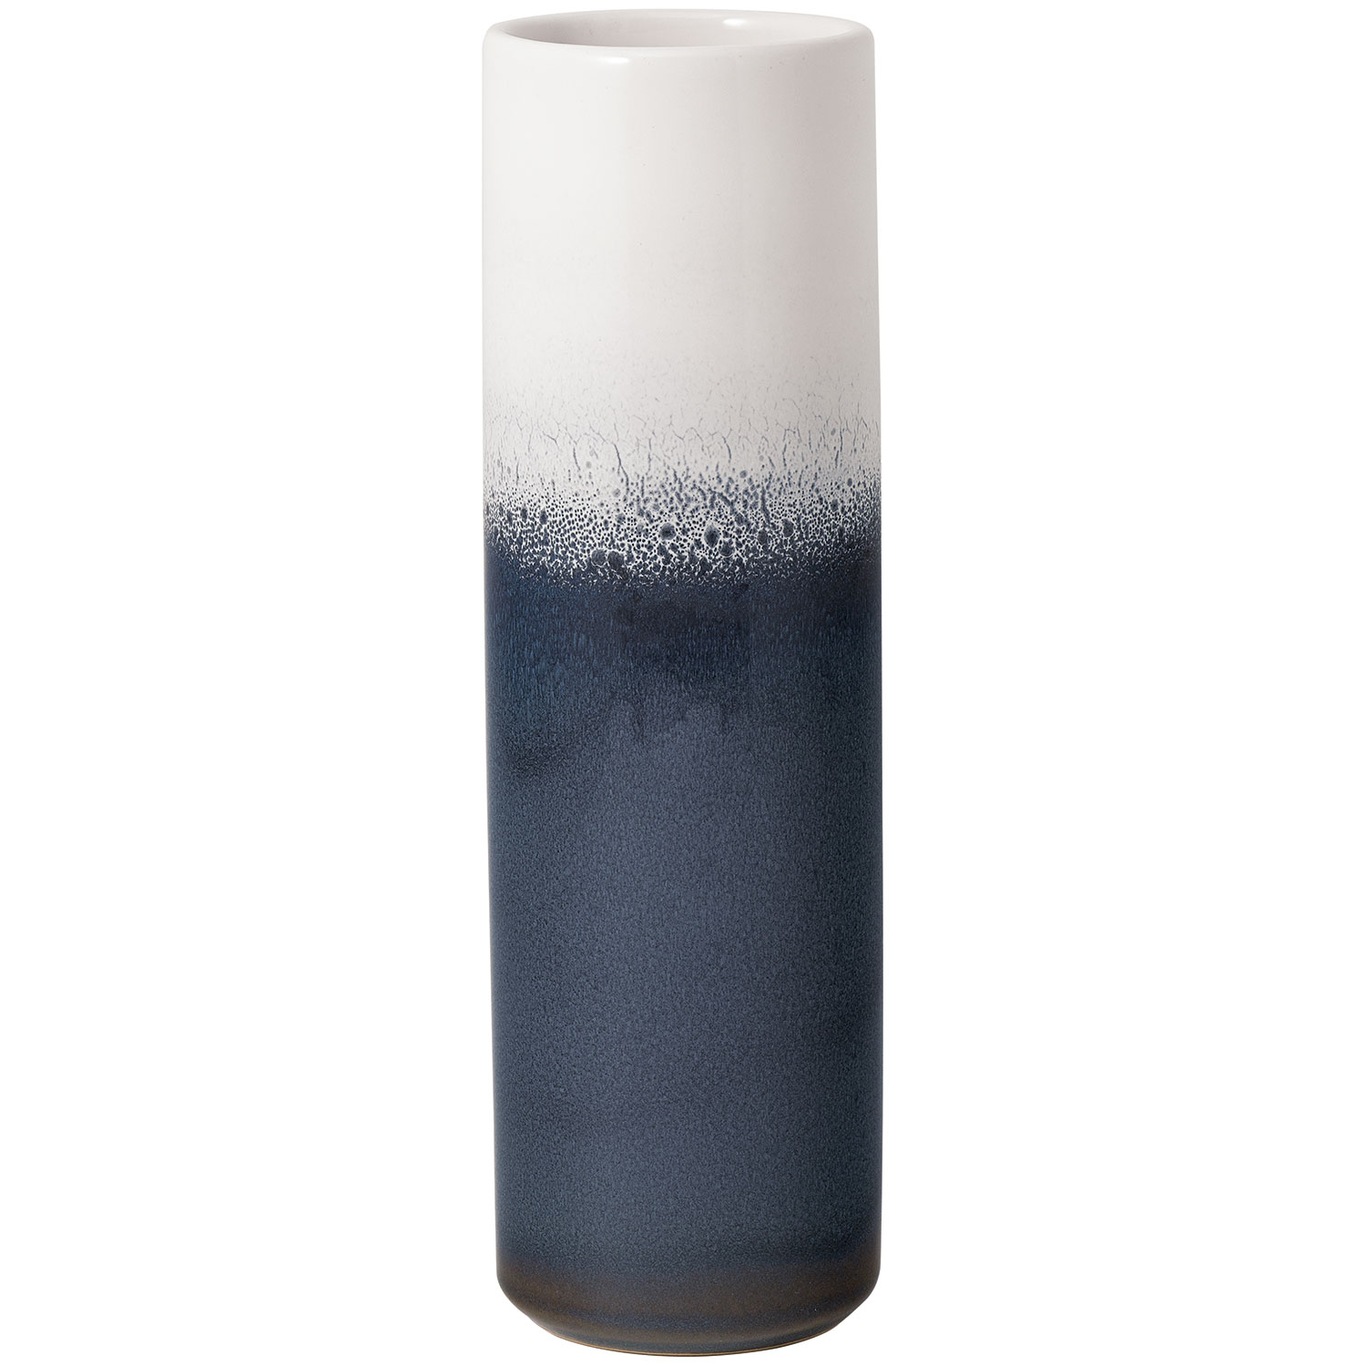 Lave Home Cylinder Vase Blau, 7,5x25 cm